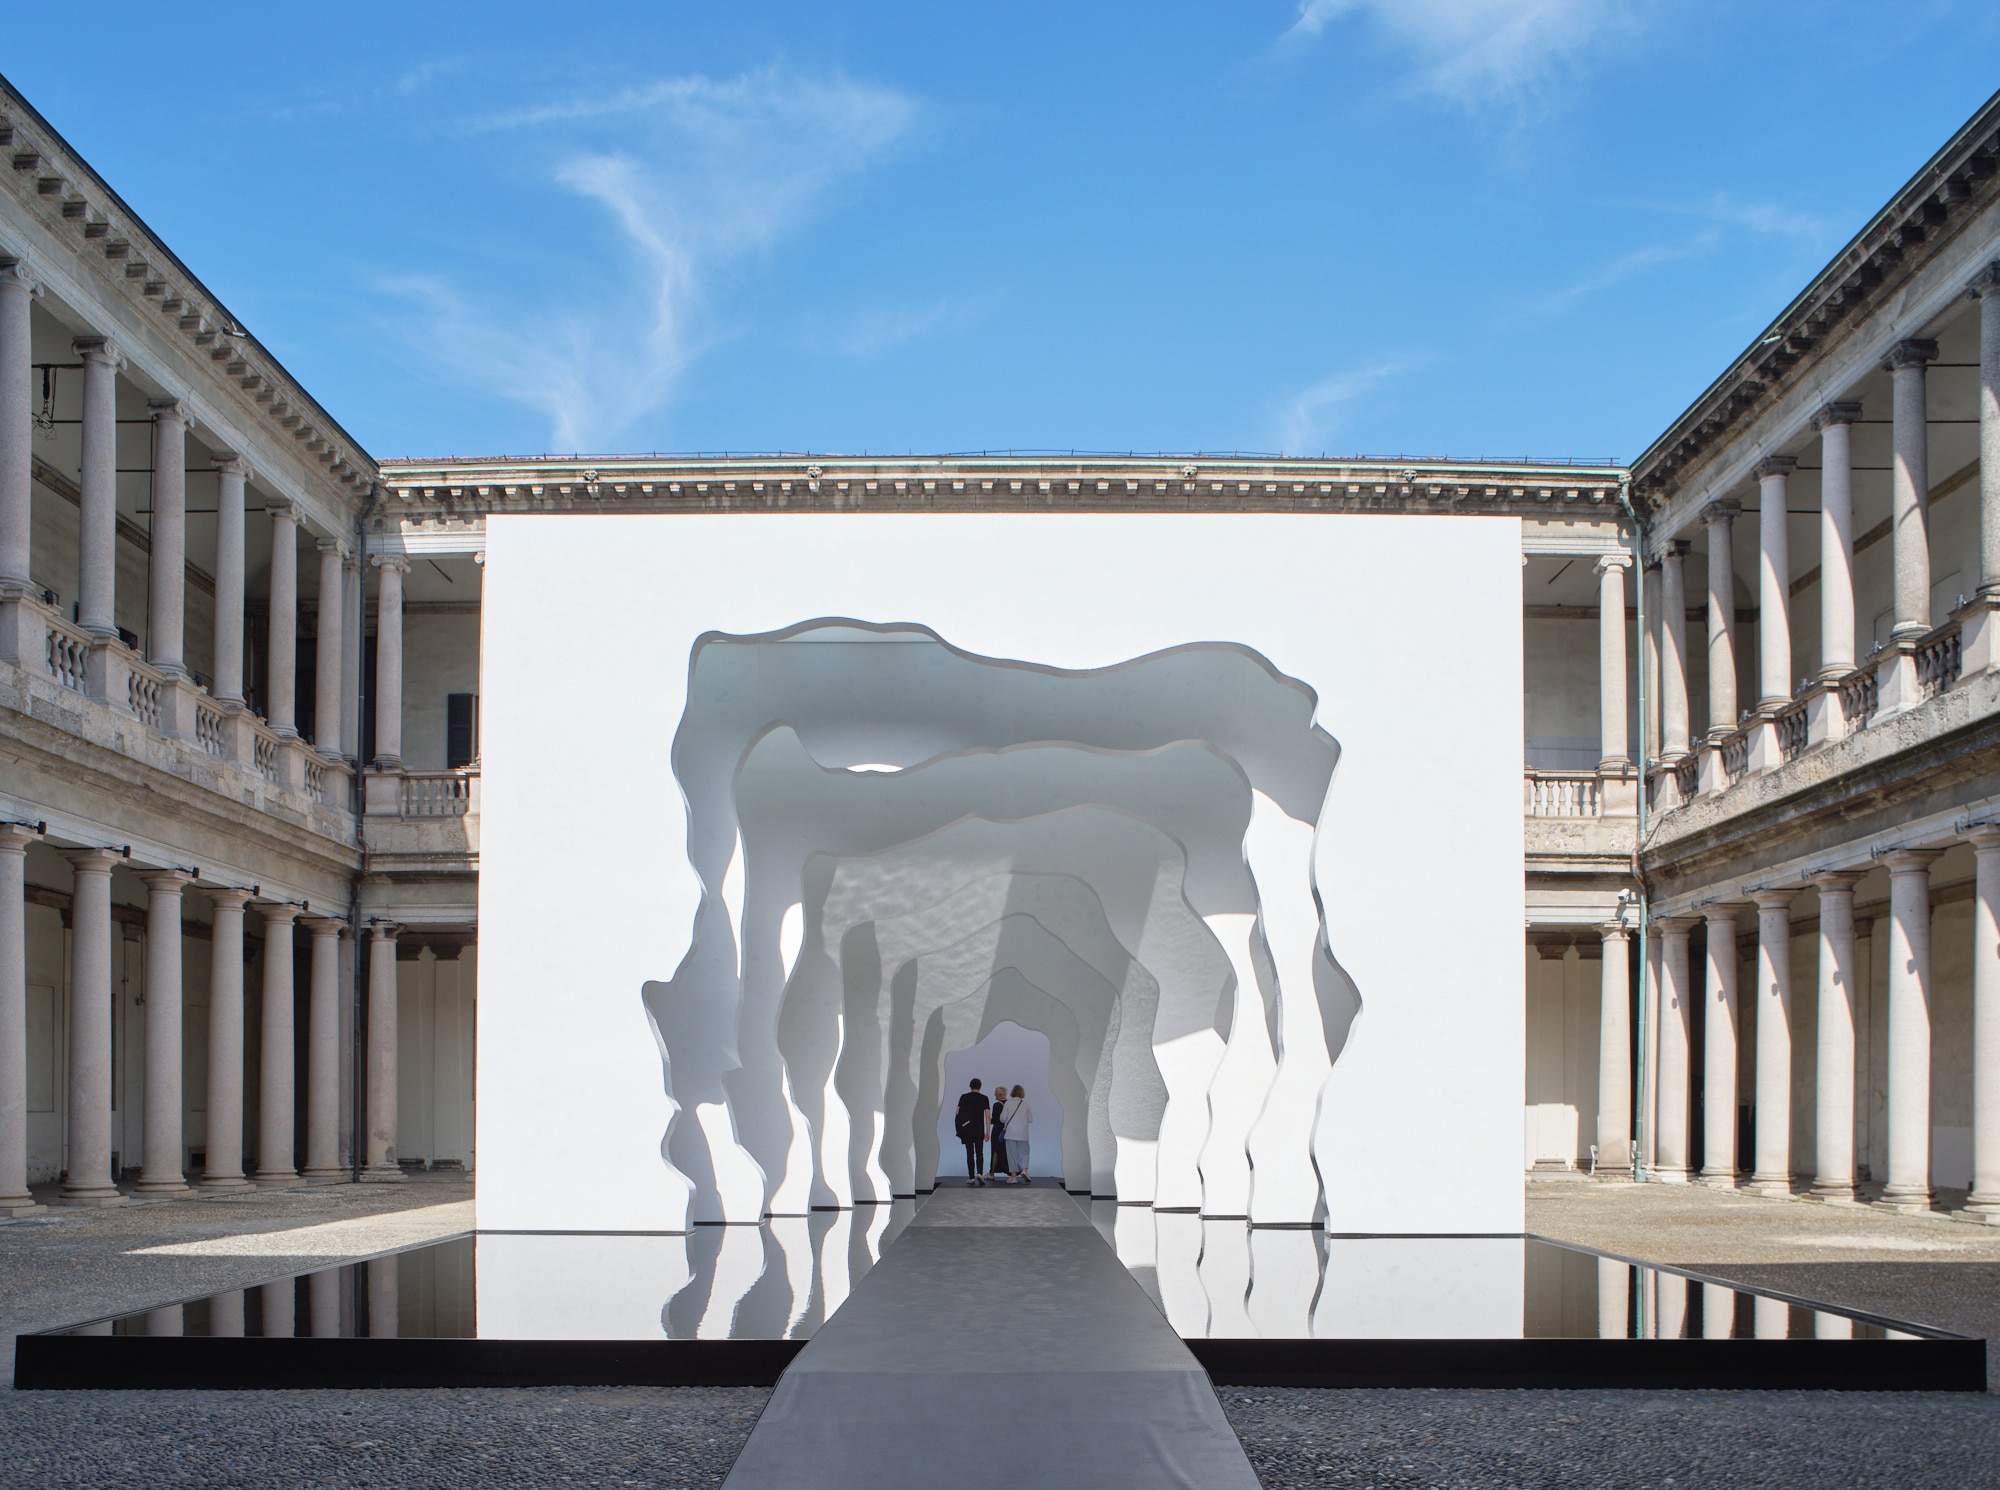 Exploring 10 large-scale installations at Milan Design Week 2023